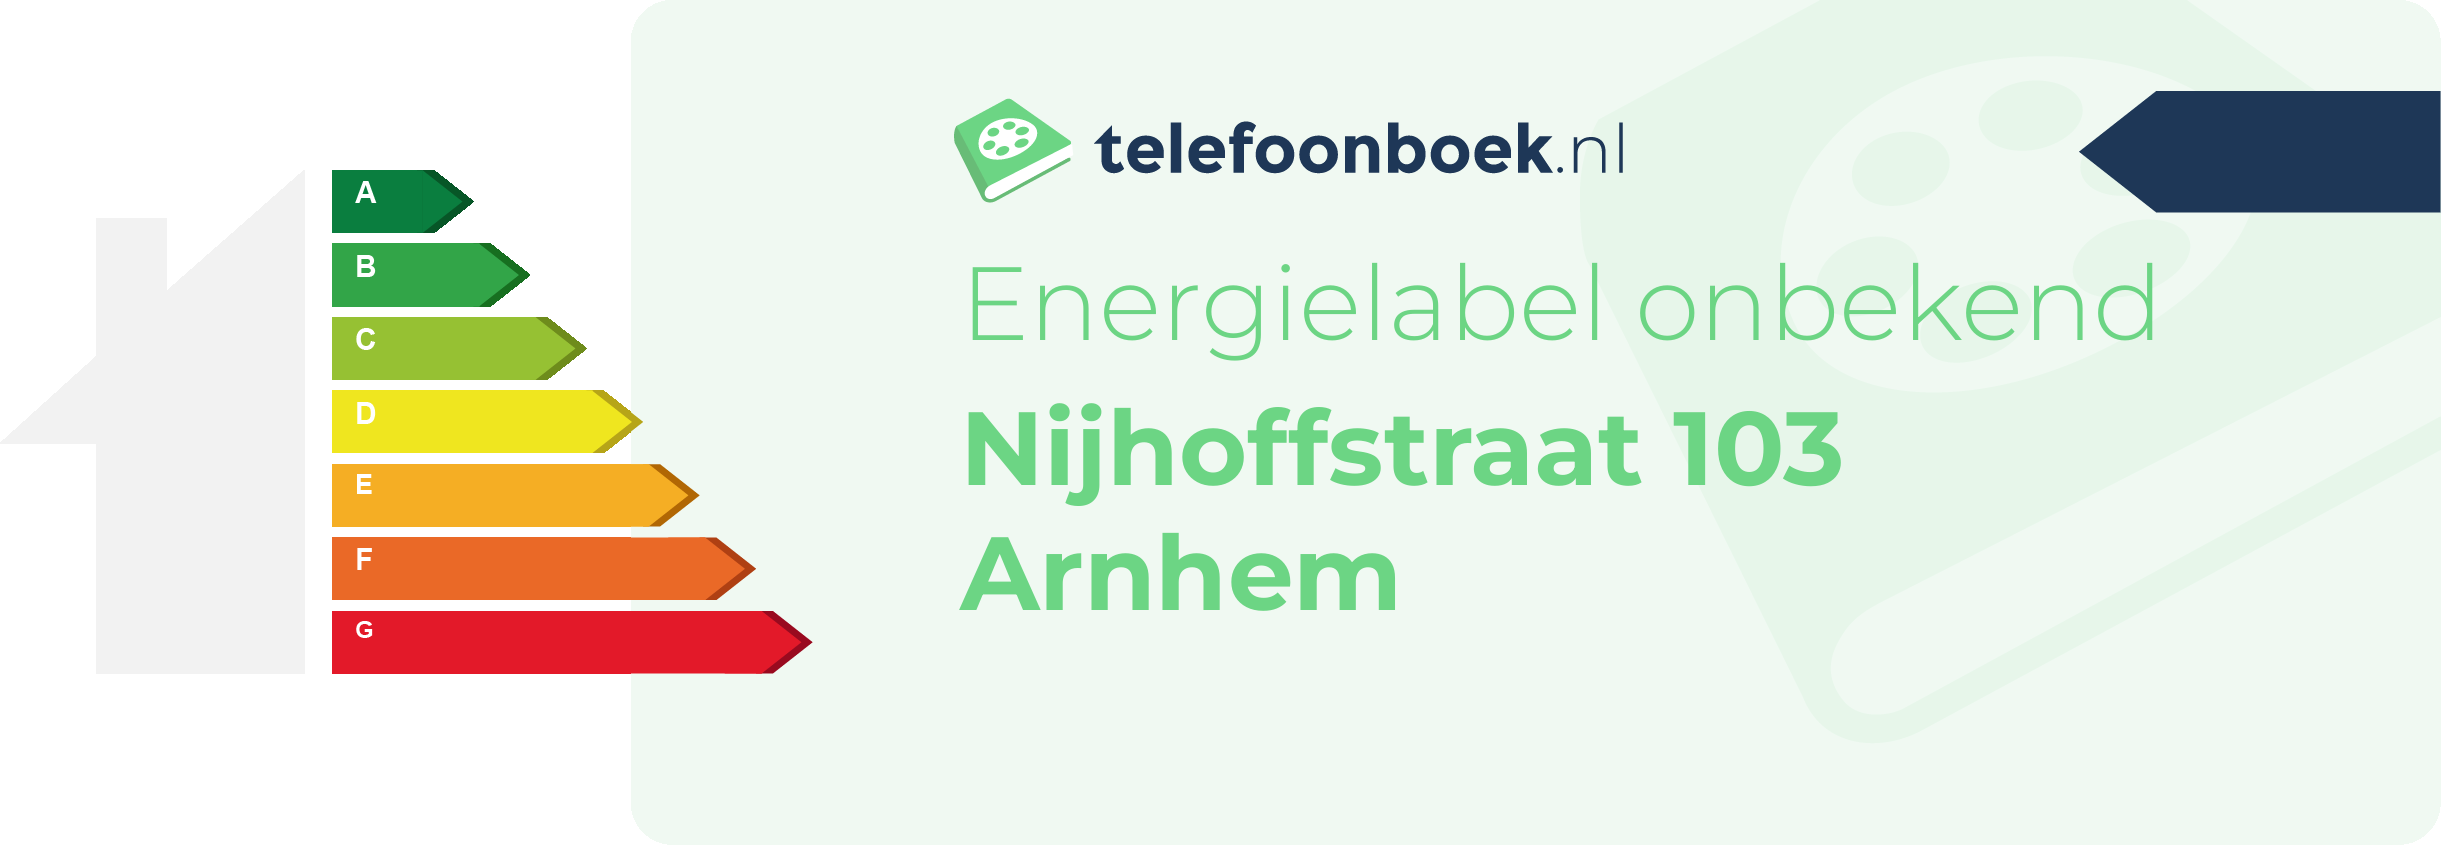 Energielabel Nijhoffstraat 103 Arnhem